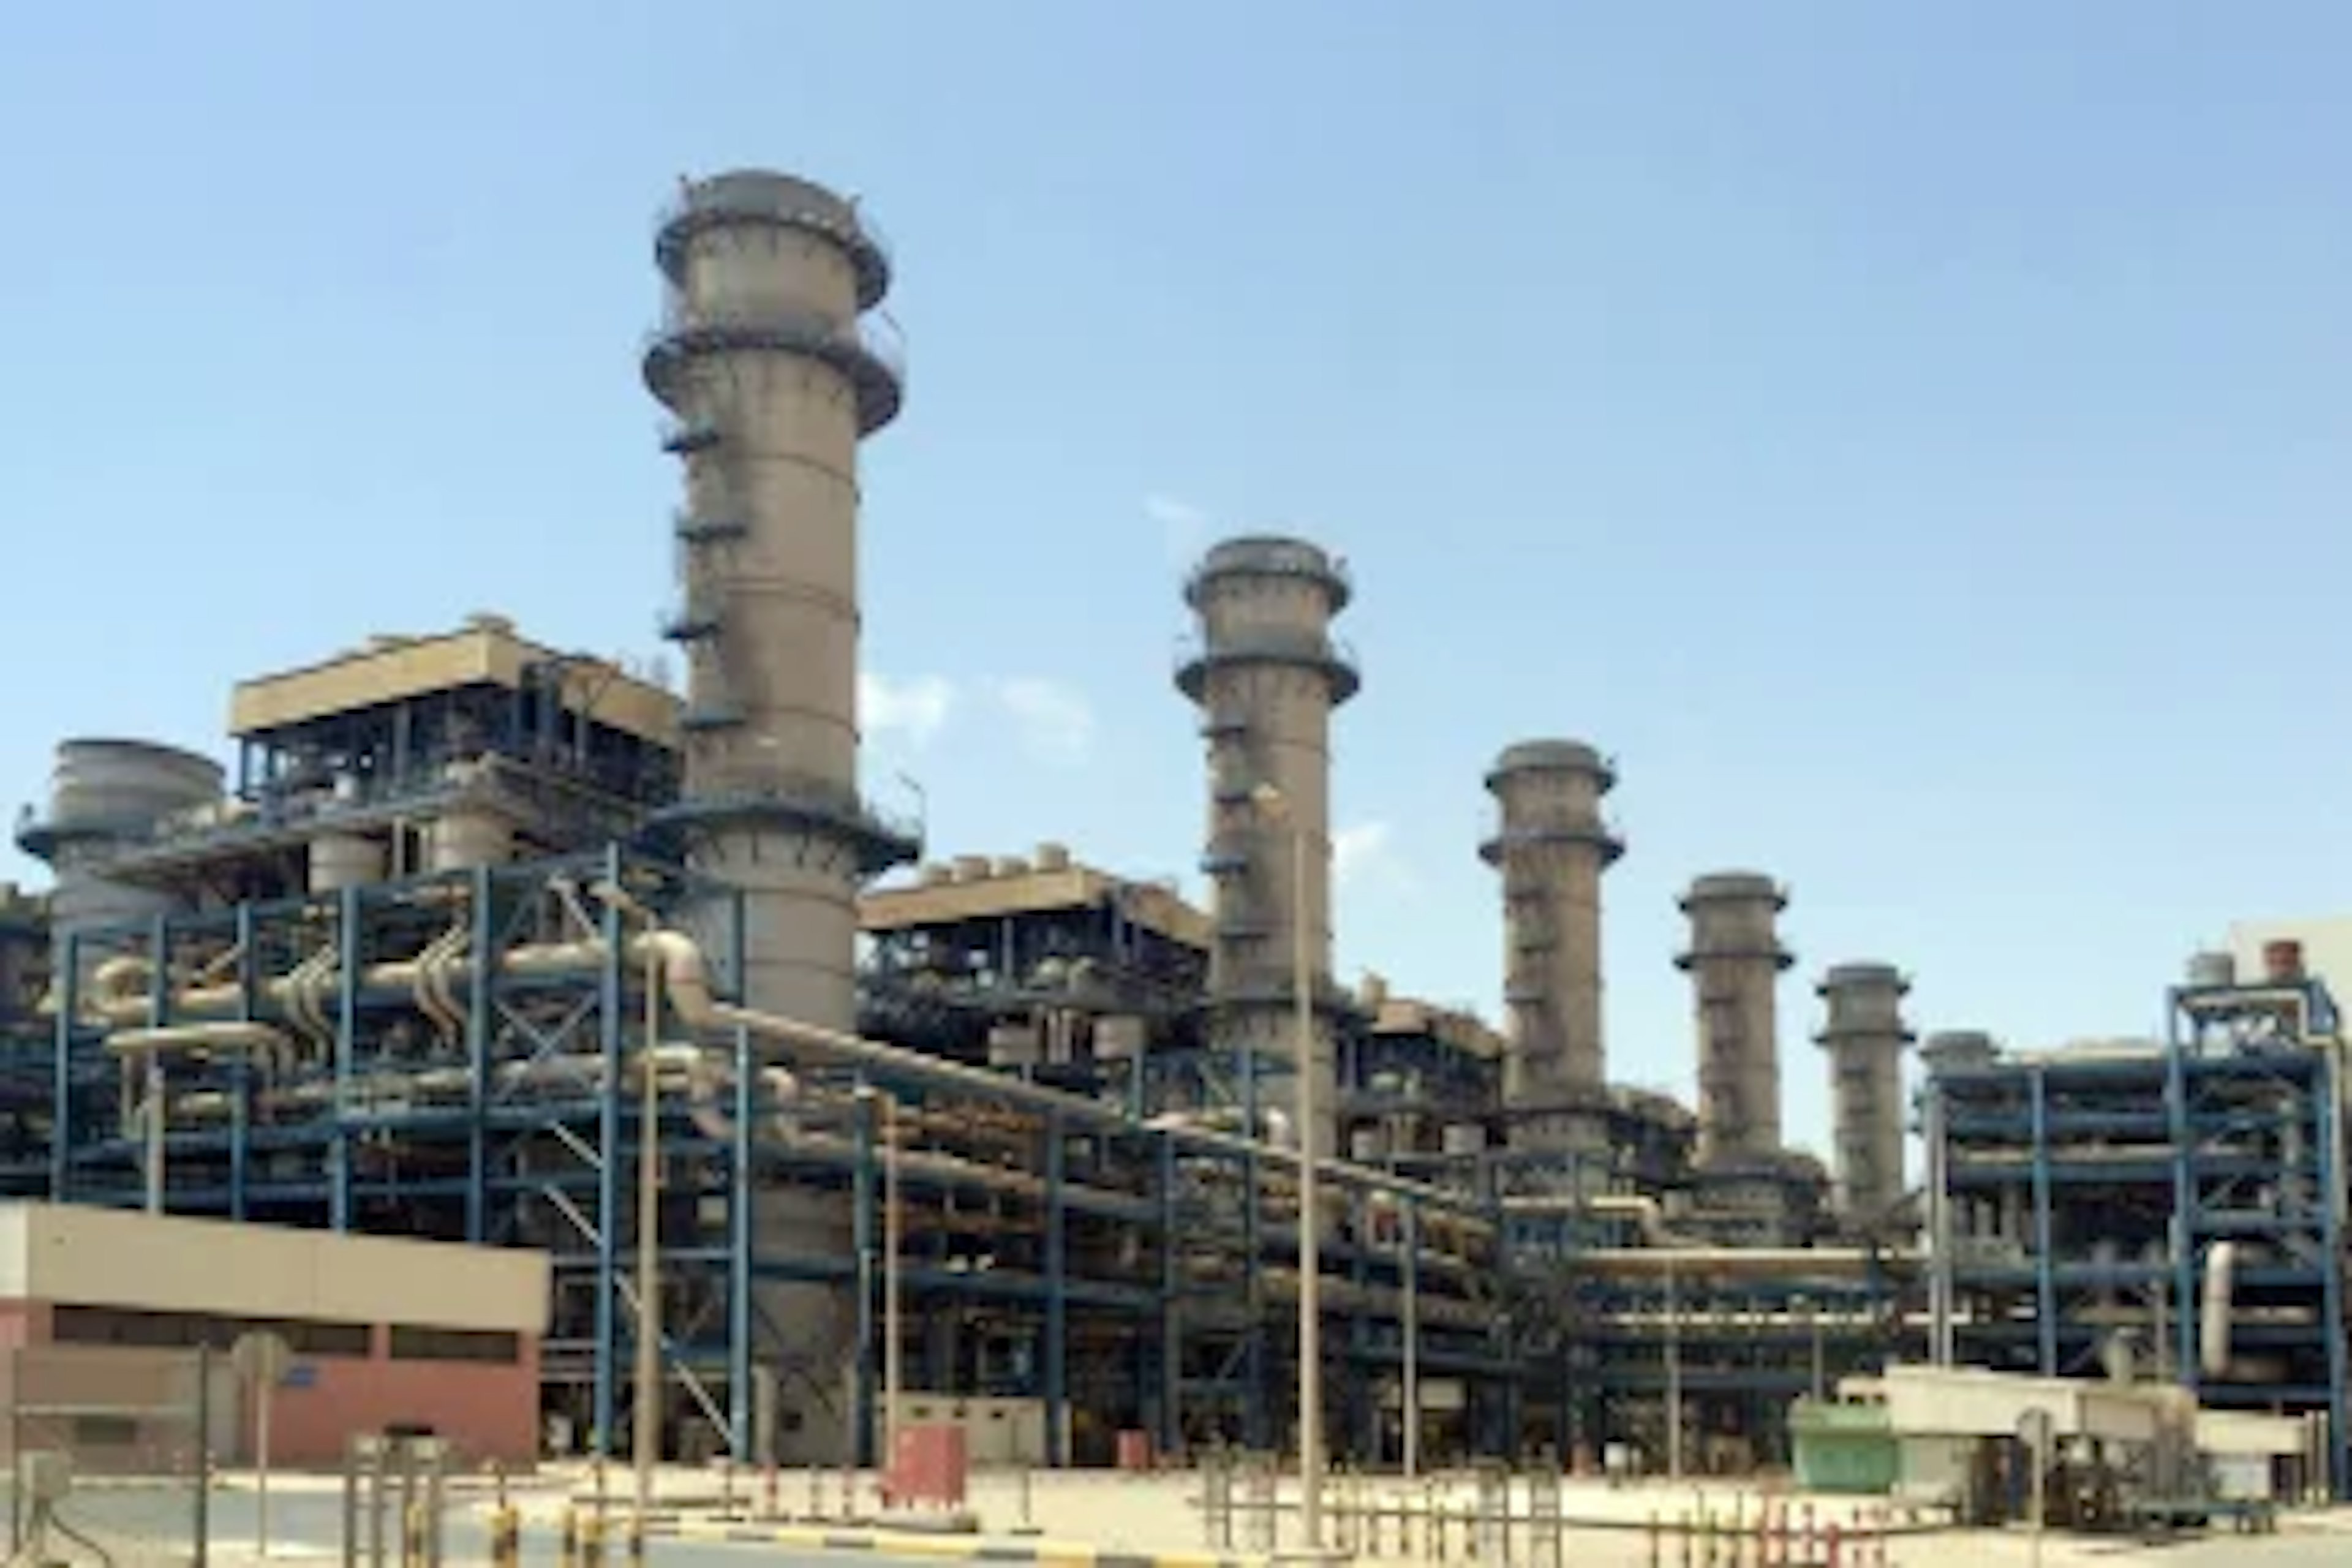 Kuwait’s Sabiya Power Plant